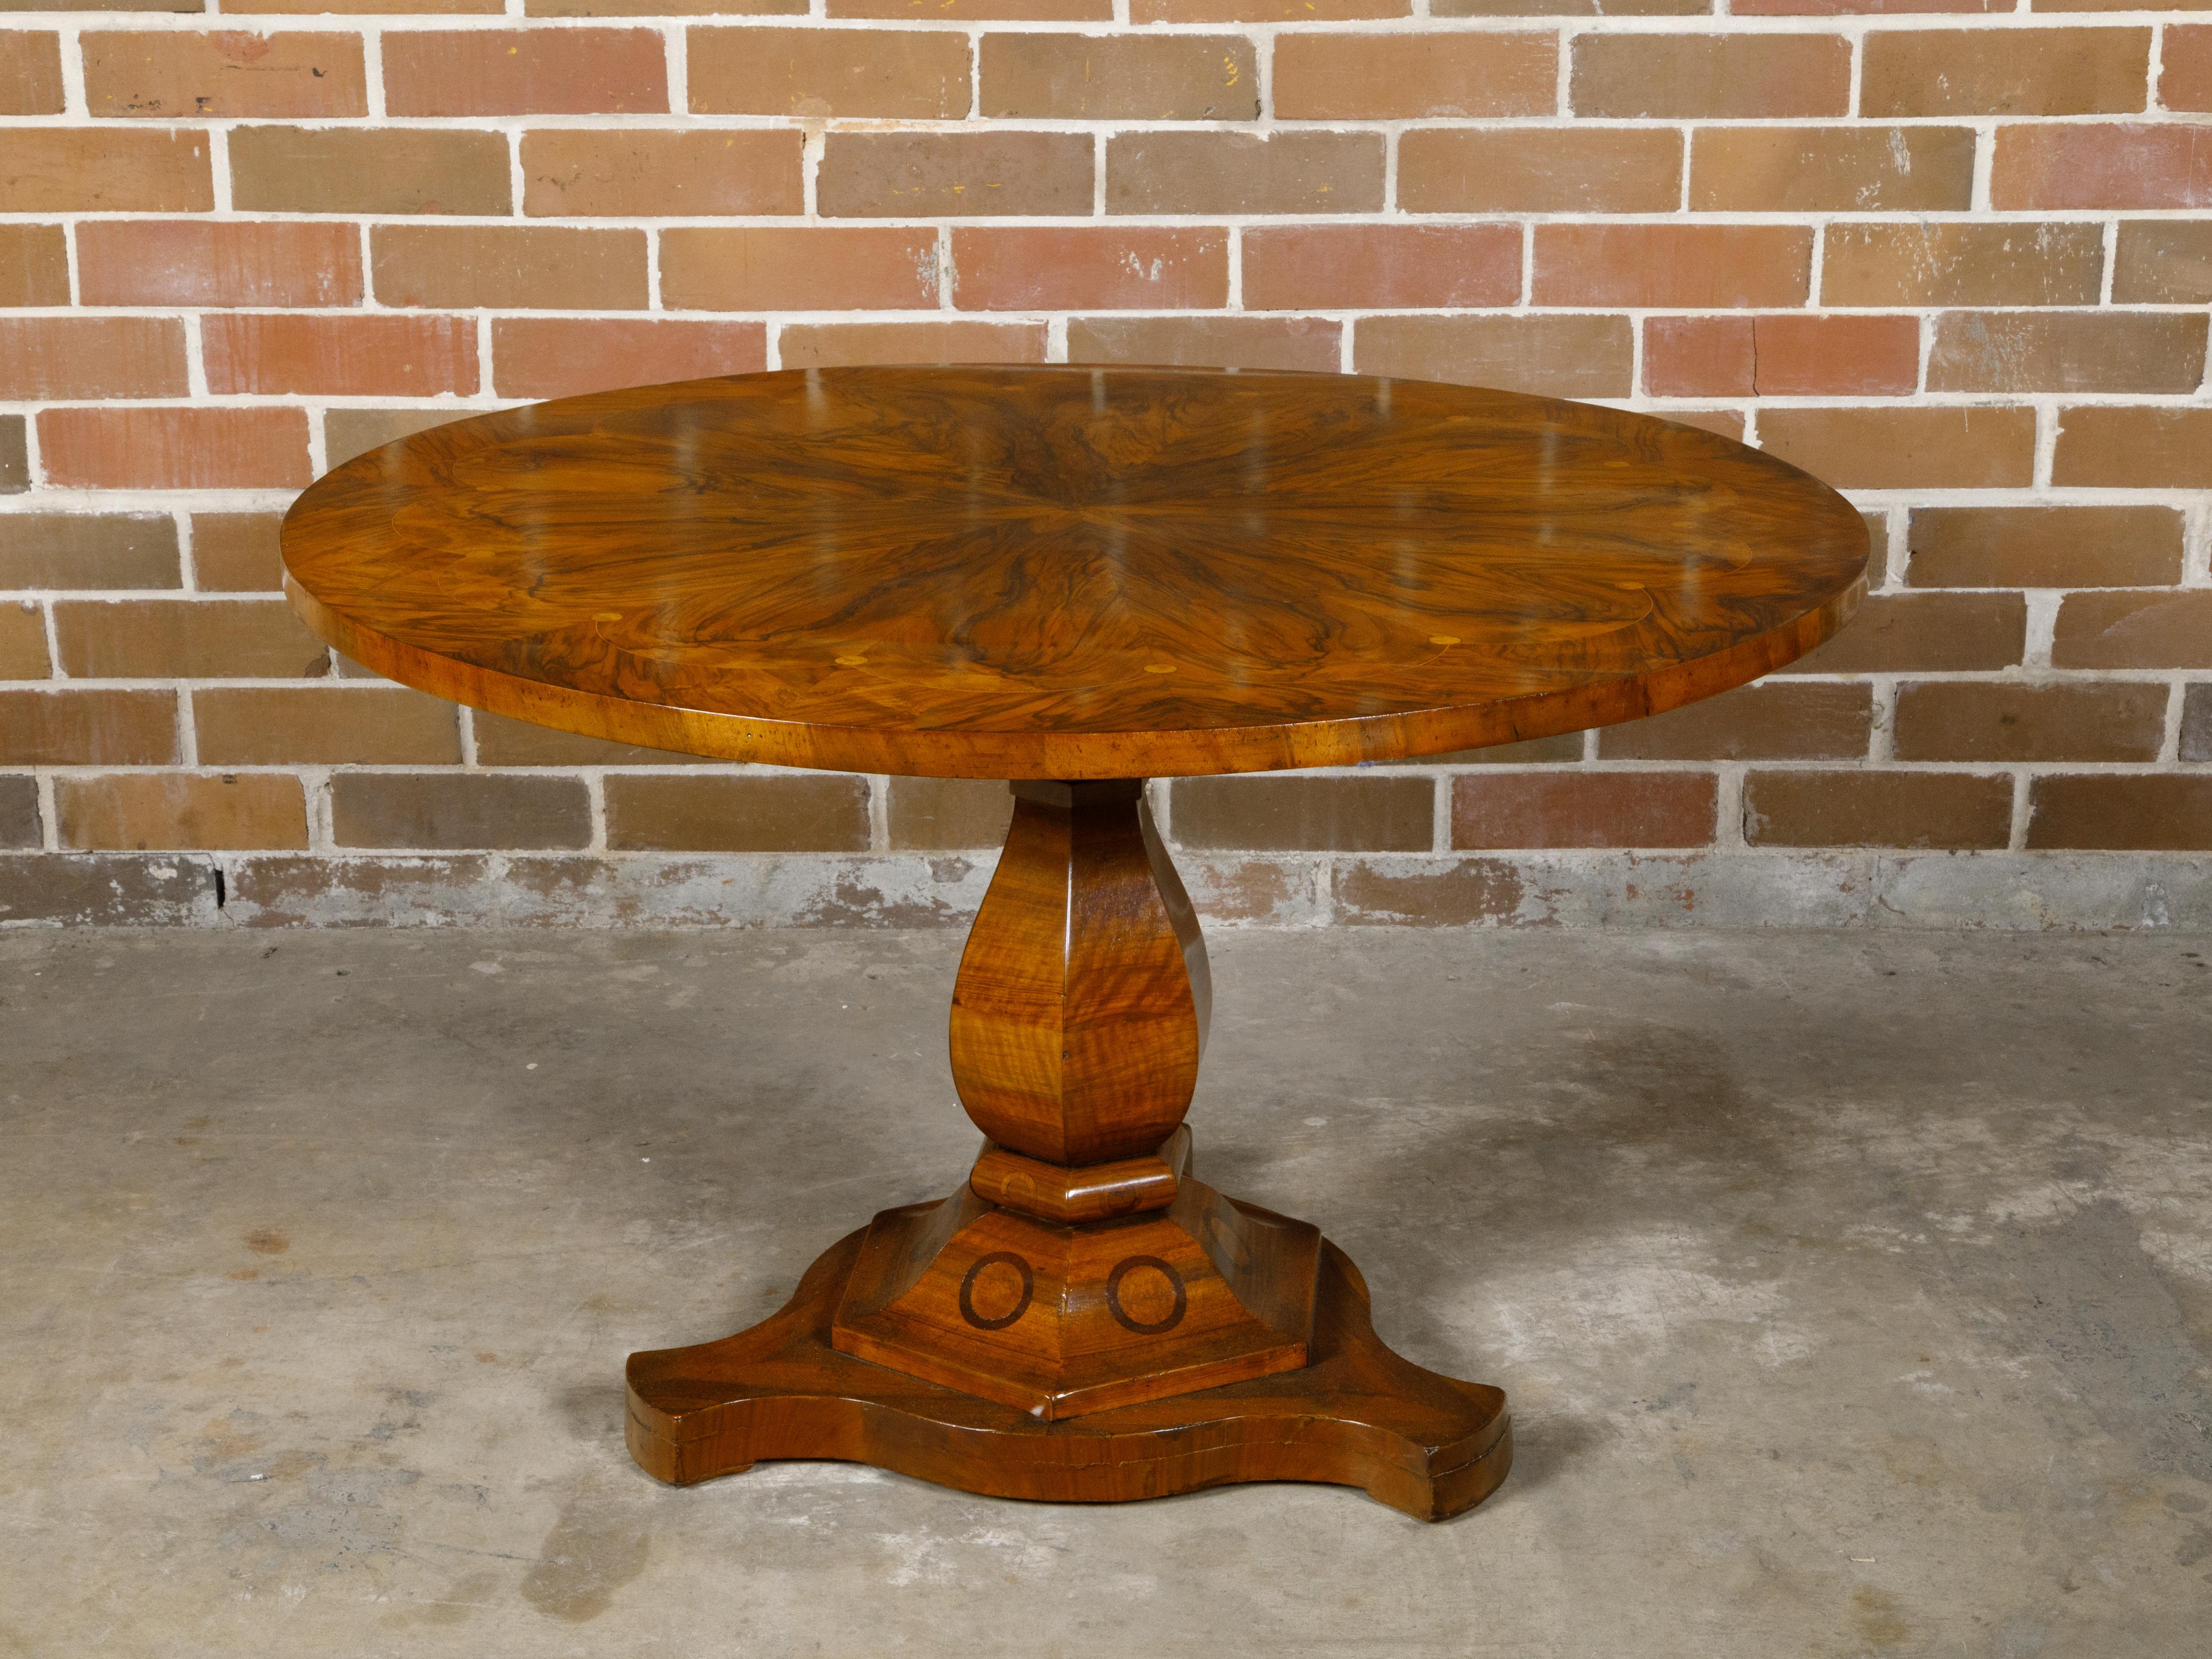 Ein Biedermeier-Tisch aus dem 19. Jahrhundert mit runder Platte aus geflammtem Nussbaum, verziert mit einem exquisiten Strahlenmotiv, auf einem Sockel. Dieser exquisite Tisch aus dem Biedermeier, der auf das 19. Jahrhundert zurückgeht, zeigt die